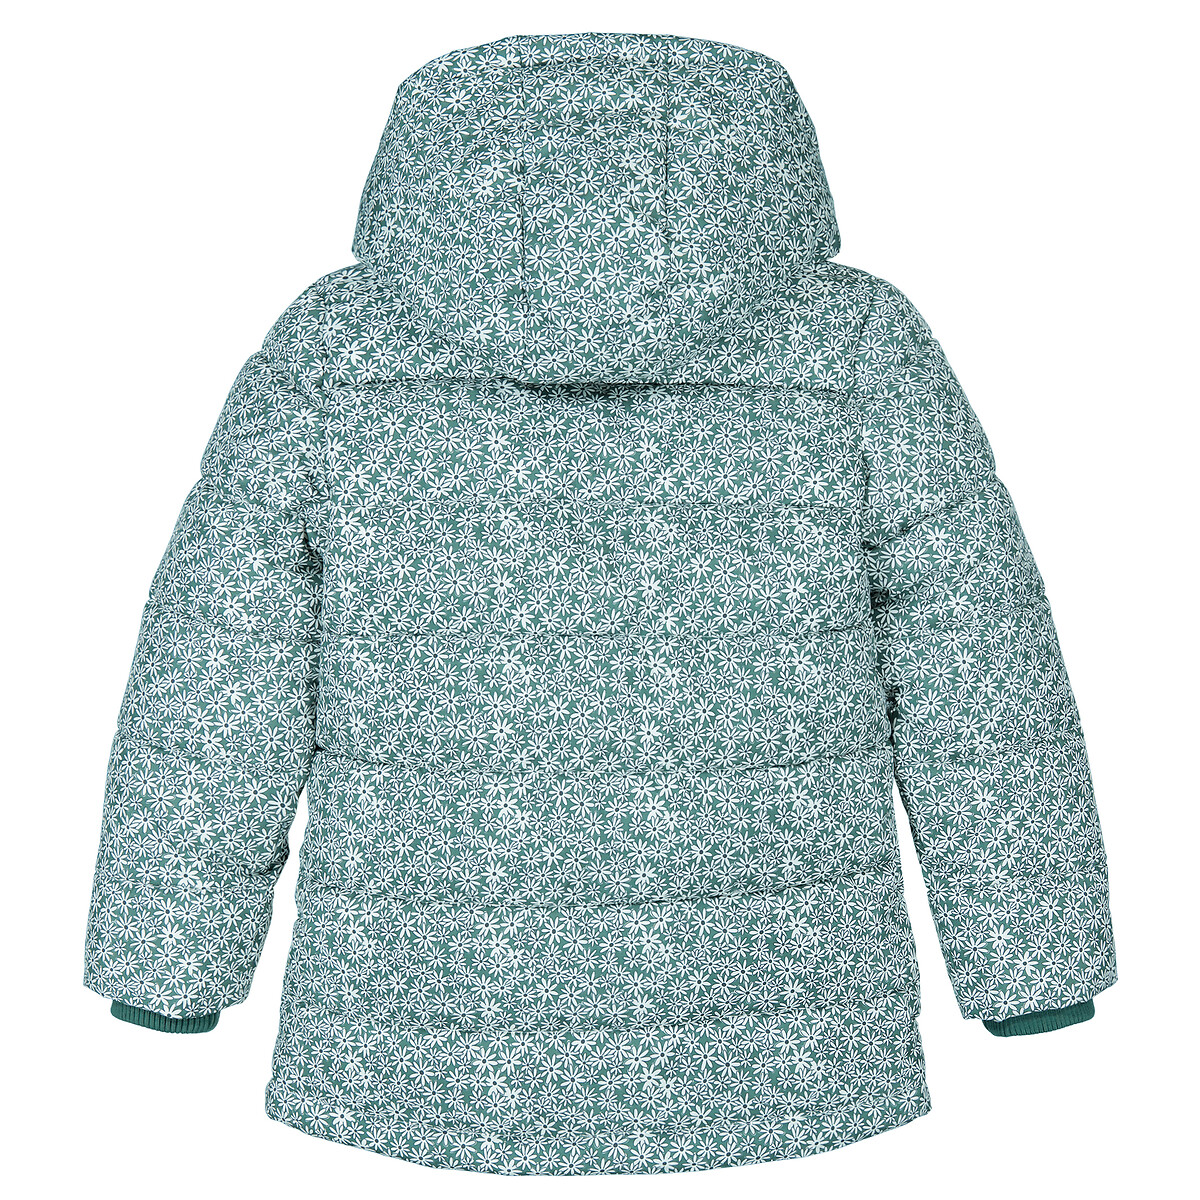 Куртка Стеганая утепленная с капюшоном цветочный принт 4 года - 102 см зеленый LaRedoute, размер 4 года - 102 см - фото 4